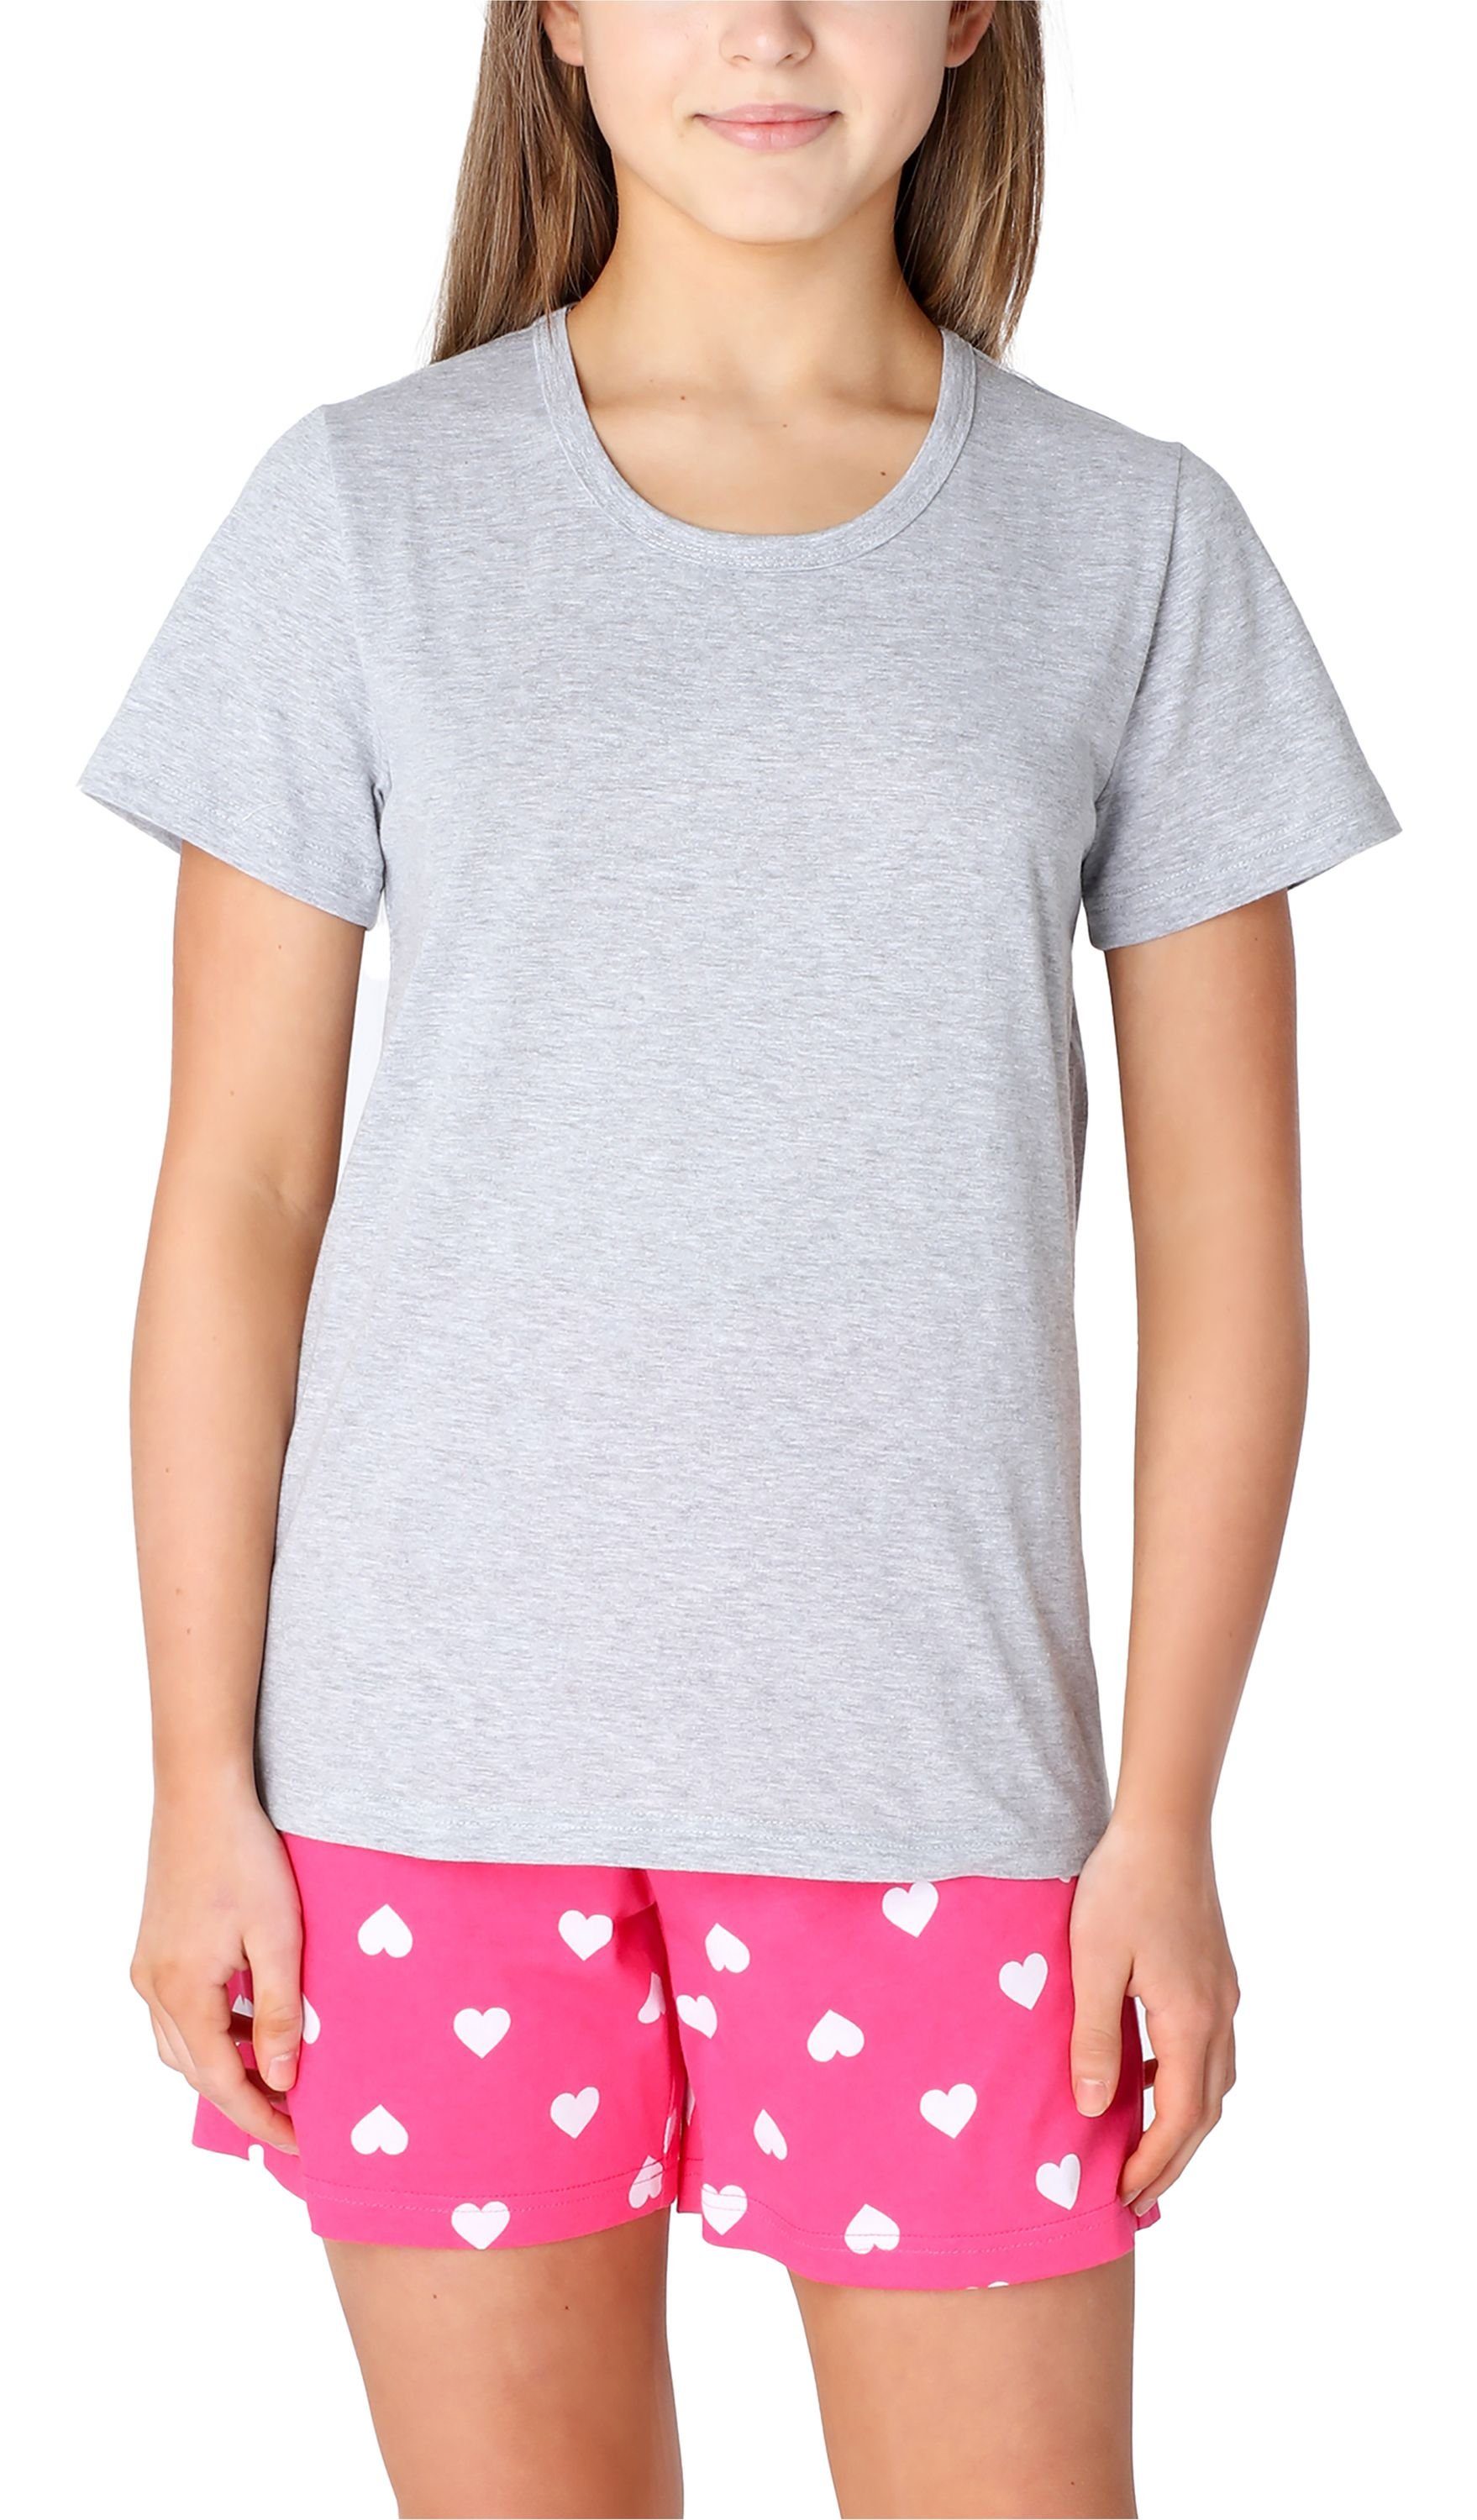 MS10-265 Schlafanzüge Style Merry Schlafanzug Melange/Rosa/Herzen Baumwolle Pyjama Set Mädchen Kurz aus